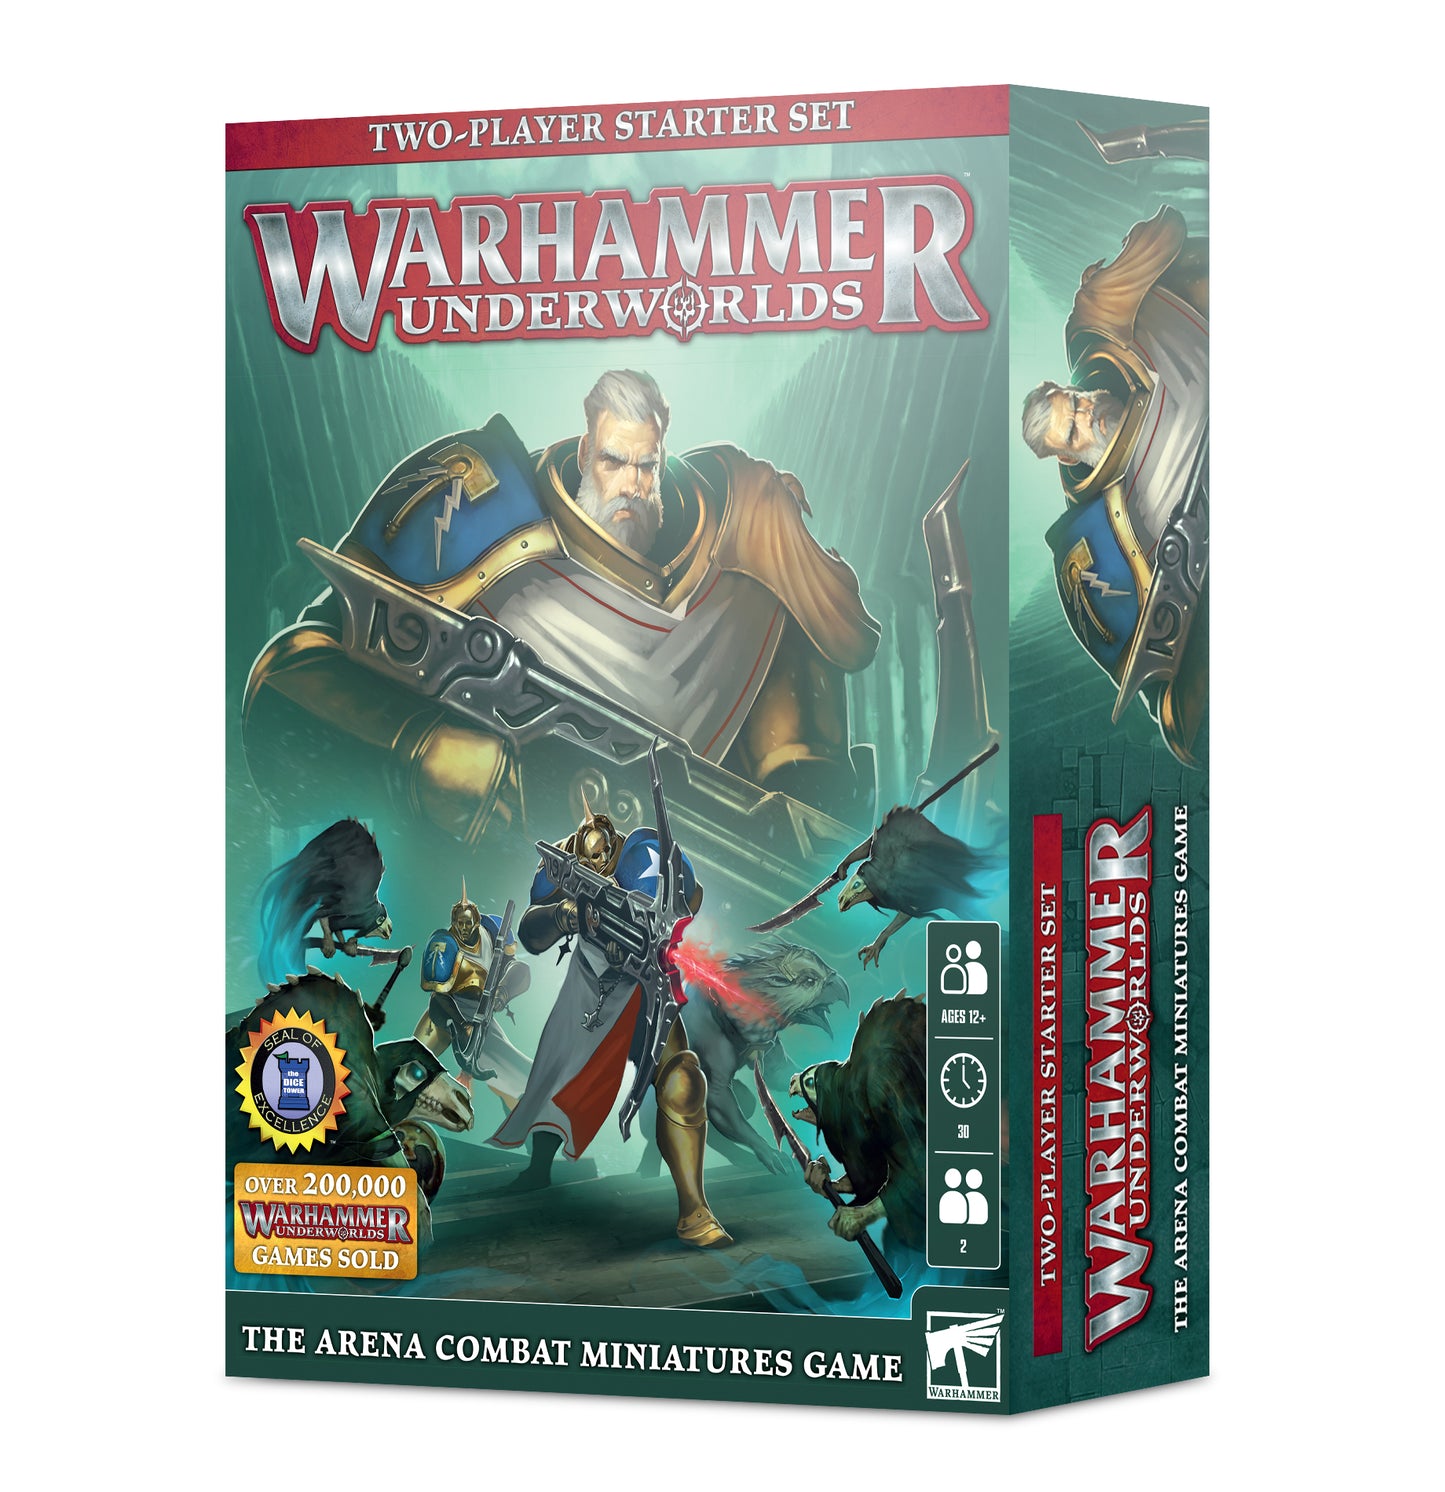 Warhammer Underworlds Two-Player Starter Set box art